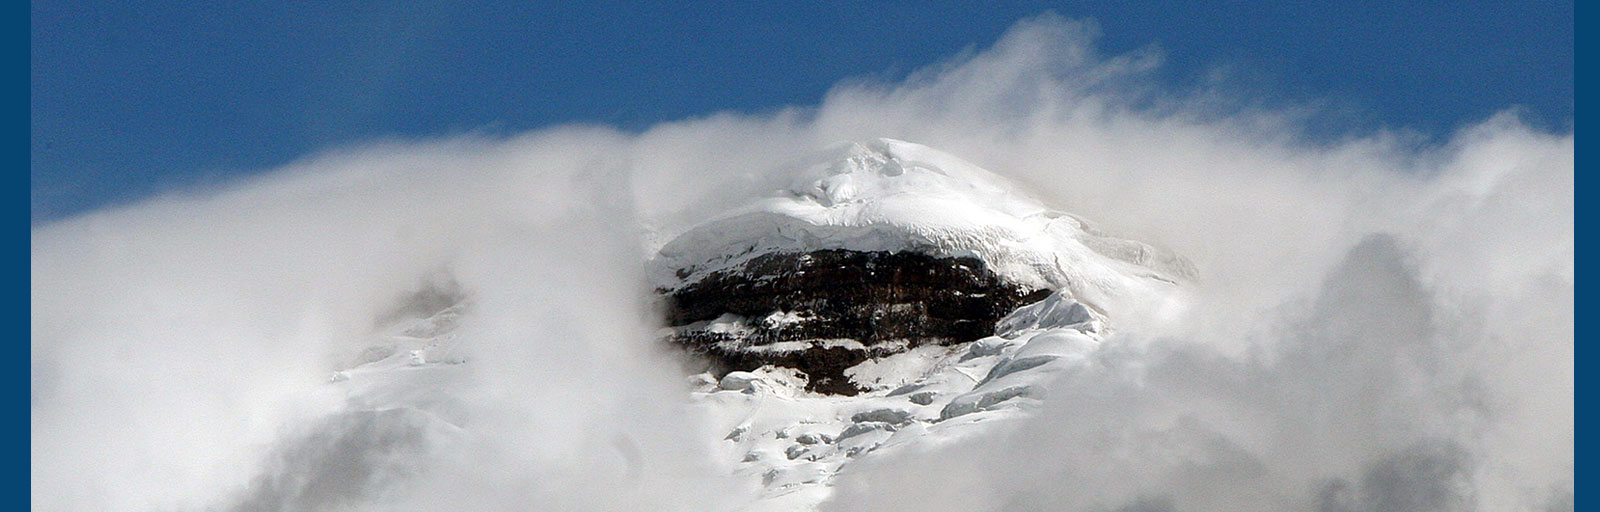 Bannerbild zeigt Bergspitze im Schnee